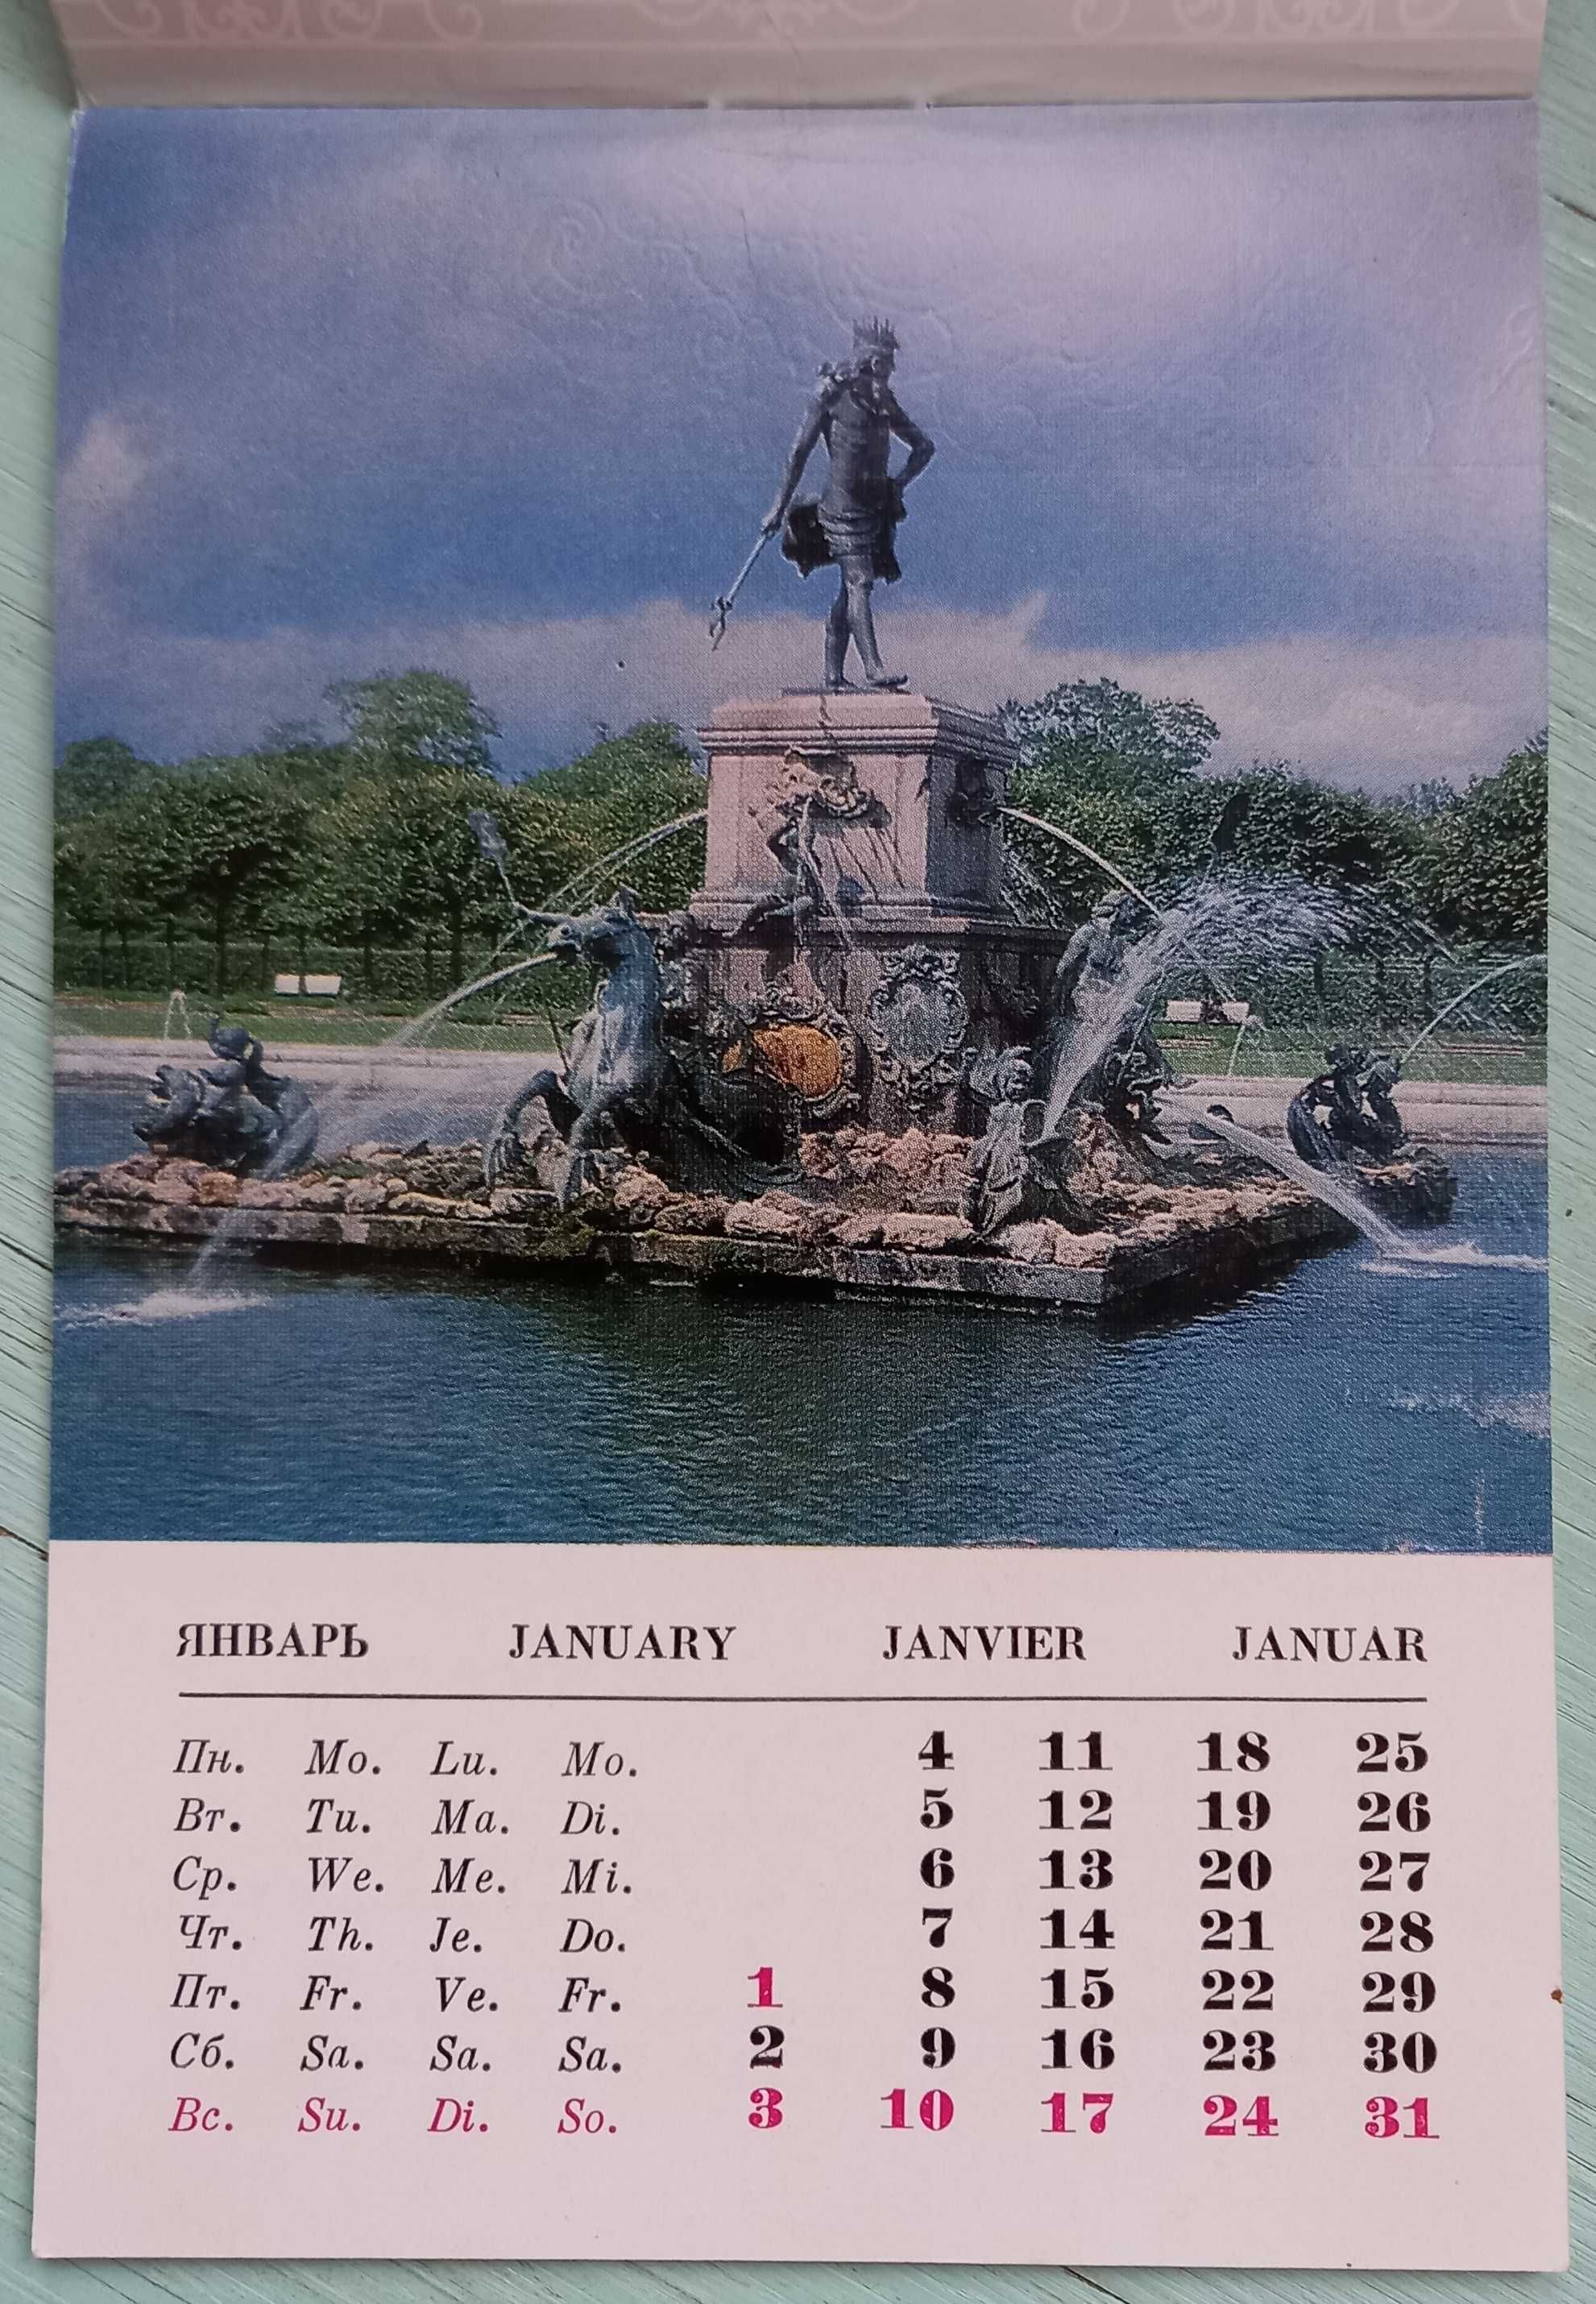 Календарь "Пригороды Ленинграда" на 1982 год